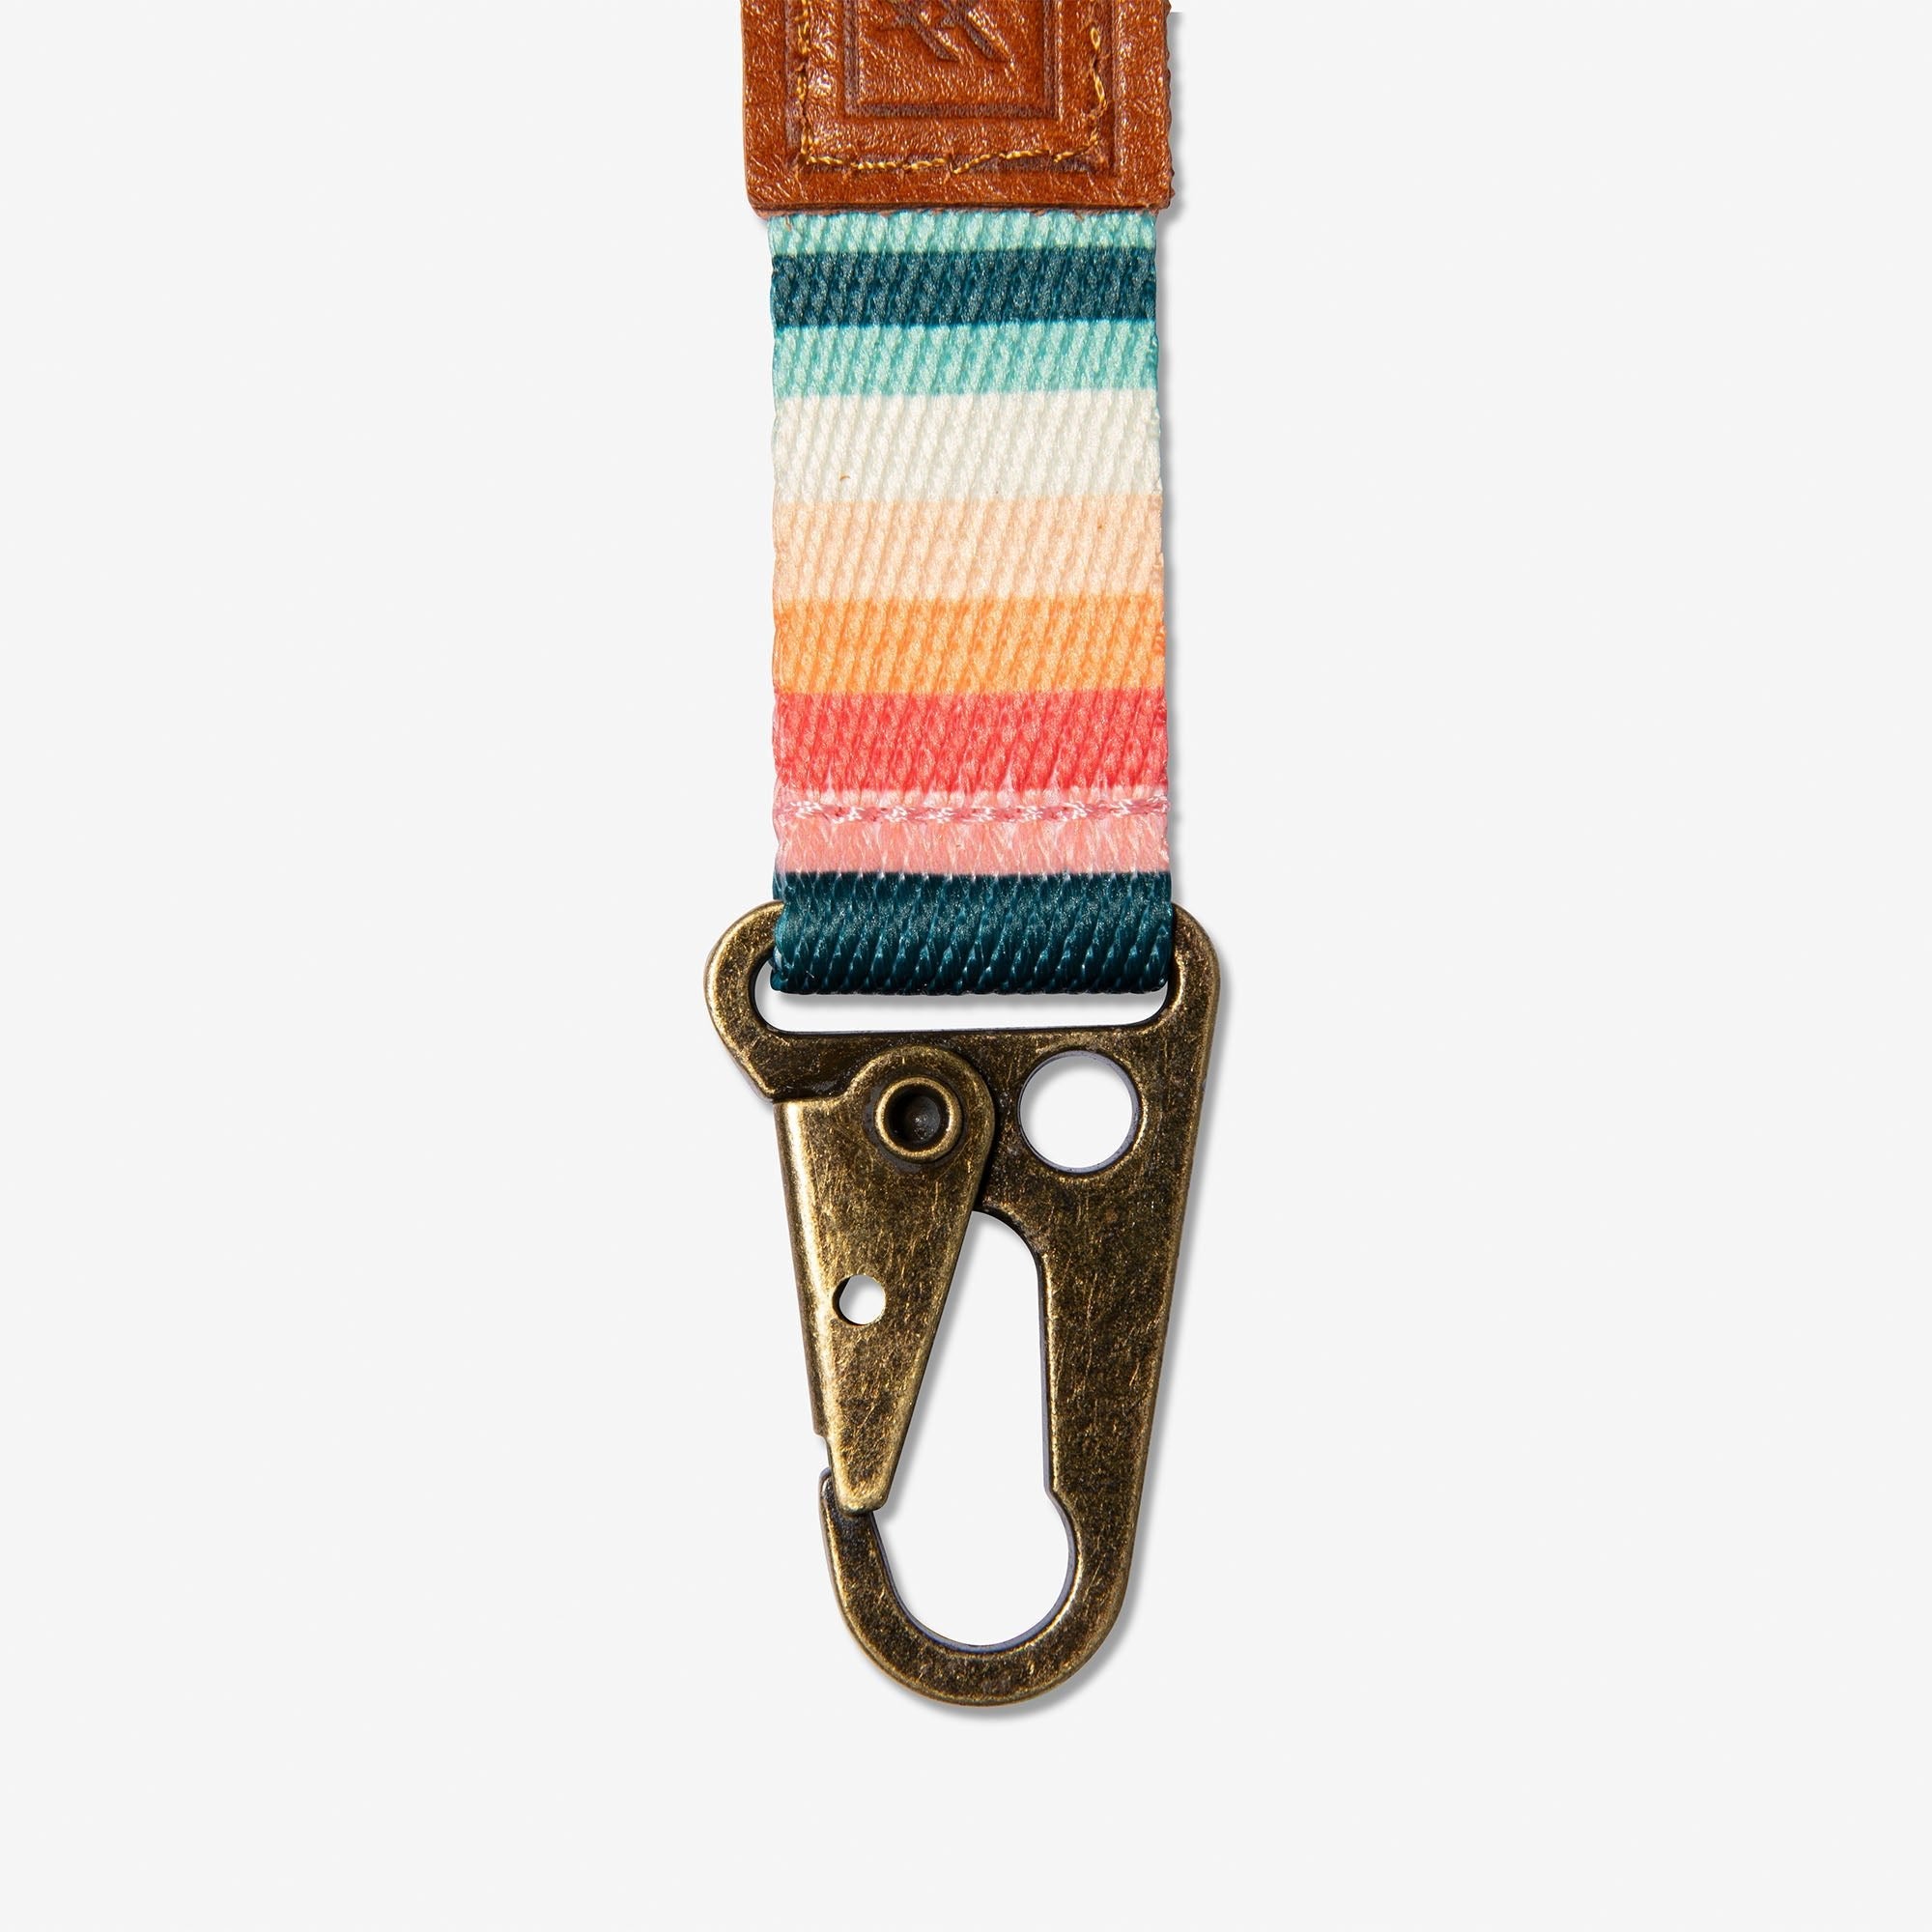 Jewel-tone striped keychain clip